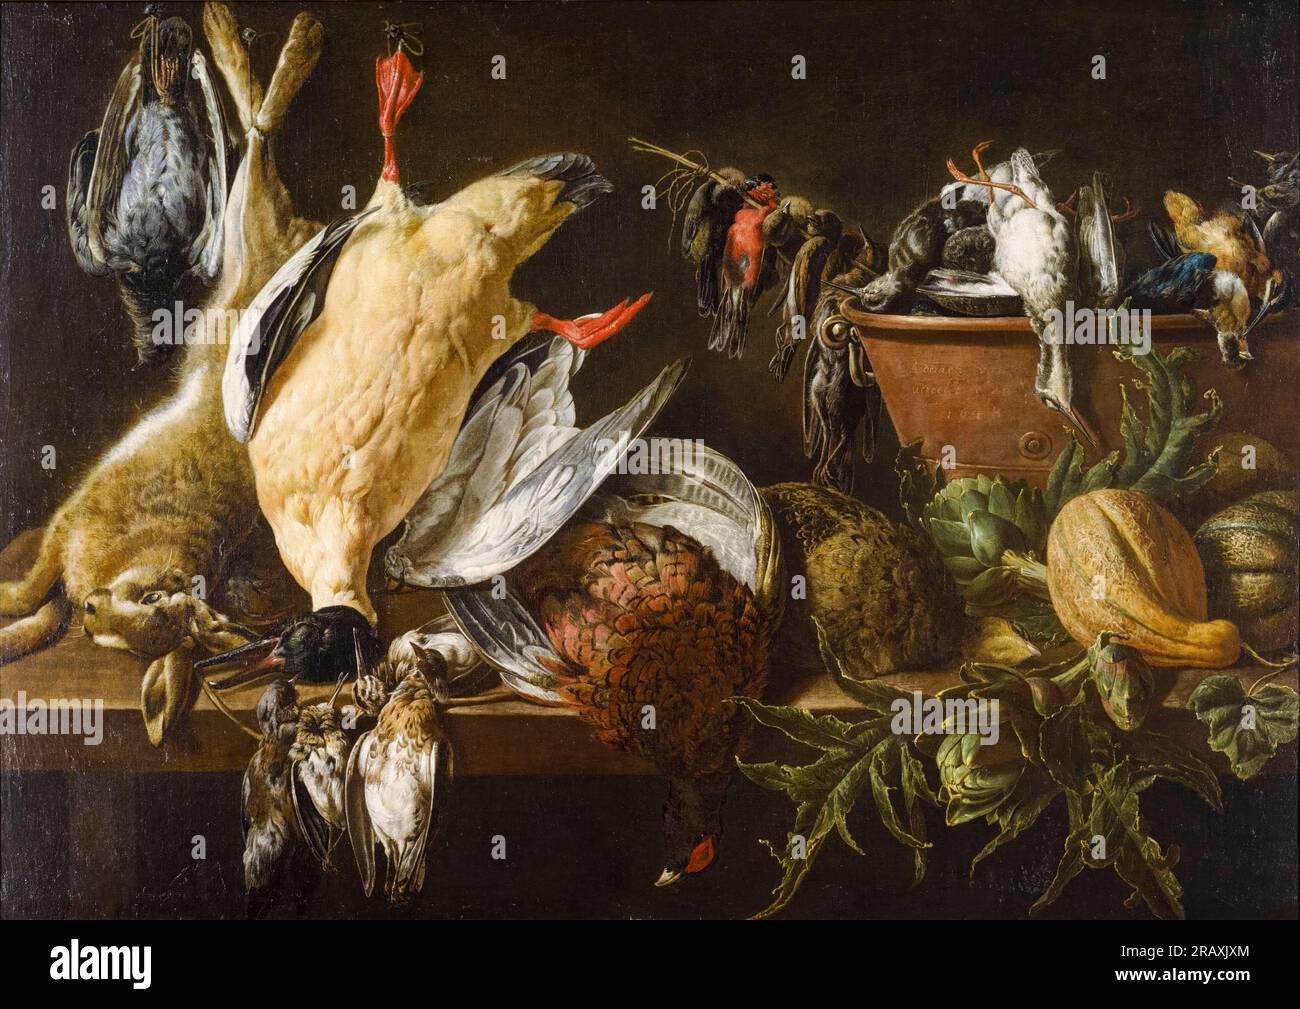 Adriaen van Utrecht, nature morte avec jeu et légumes, peinture à l'huile sur toile, 1648 Banque D'Images